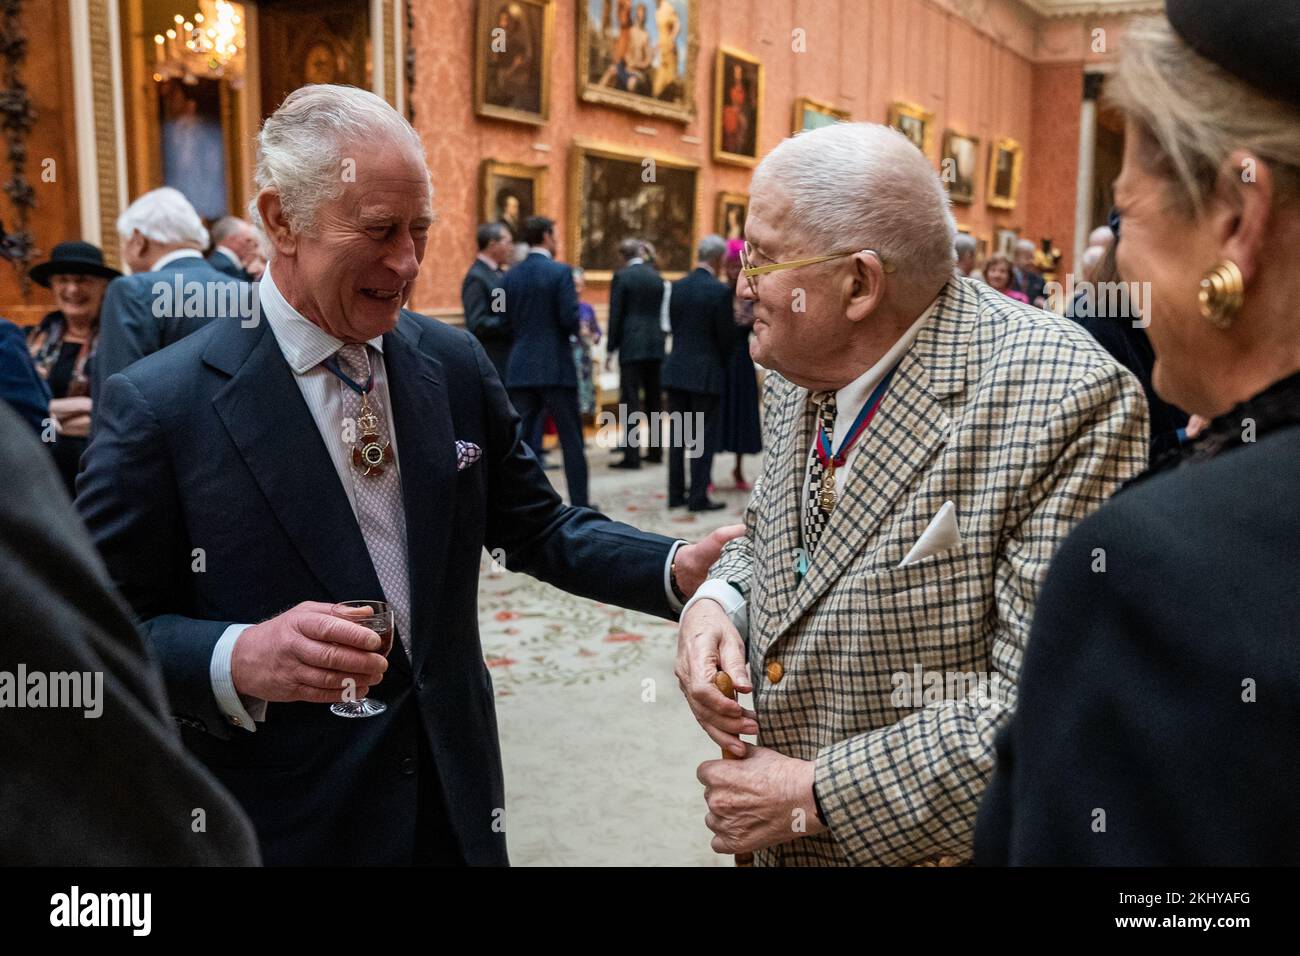 Le roi Charles III s'entretient avec M. David Hockney lors d'un déjeuner pour les membres de l'ordre du mérite au Palais de Buckingham, à Londres. Date de la photo: Jeudi 24 novembre 2022. Banque D'Images